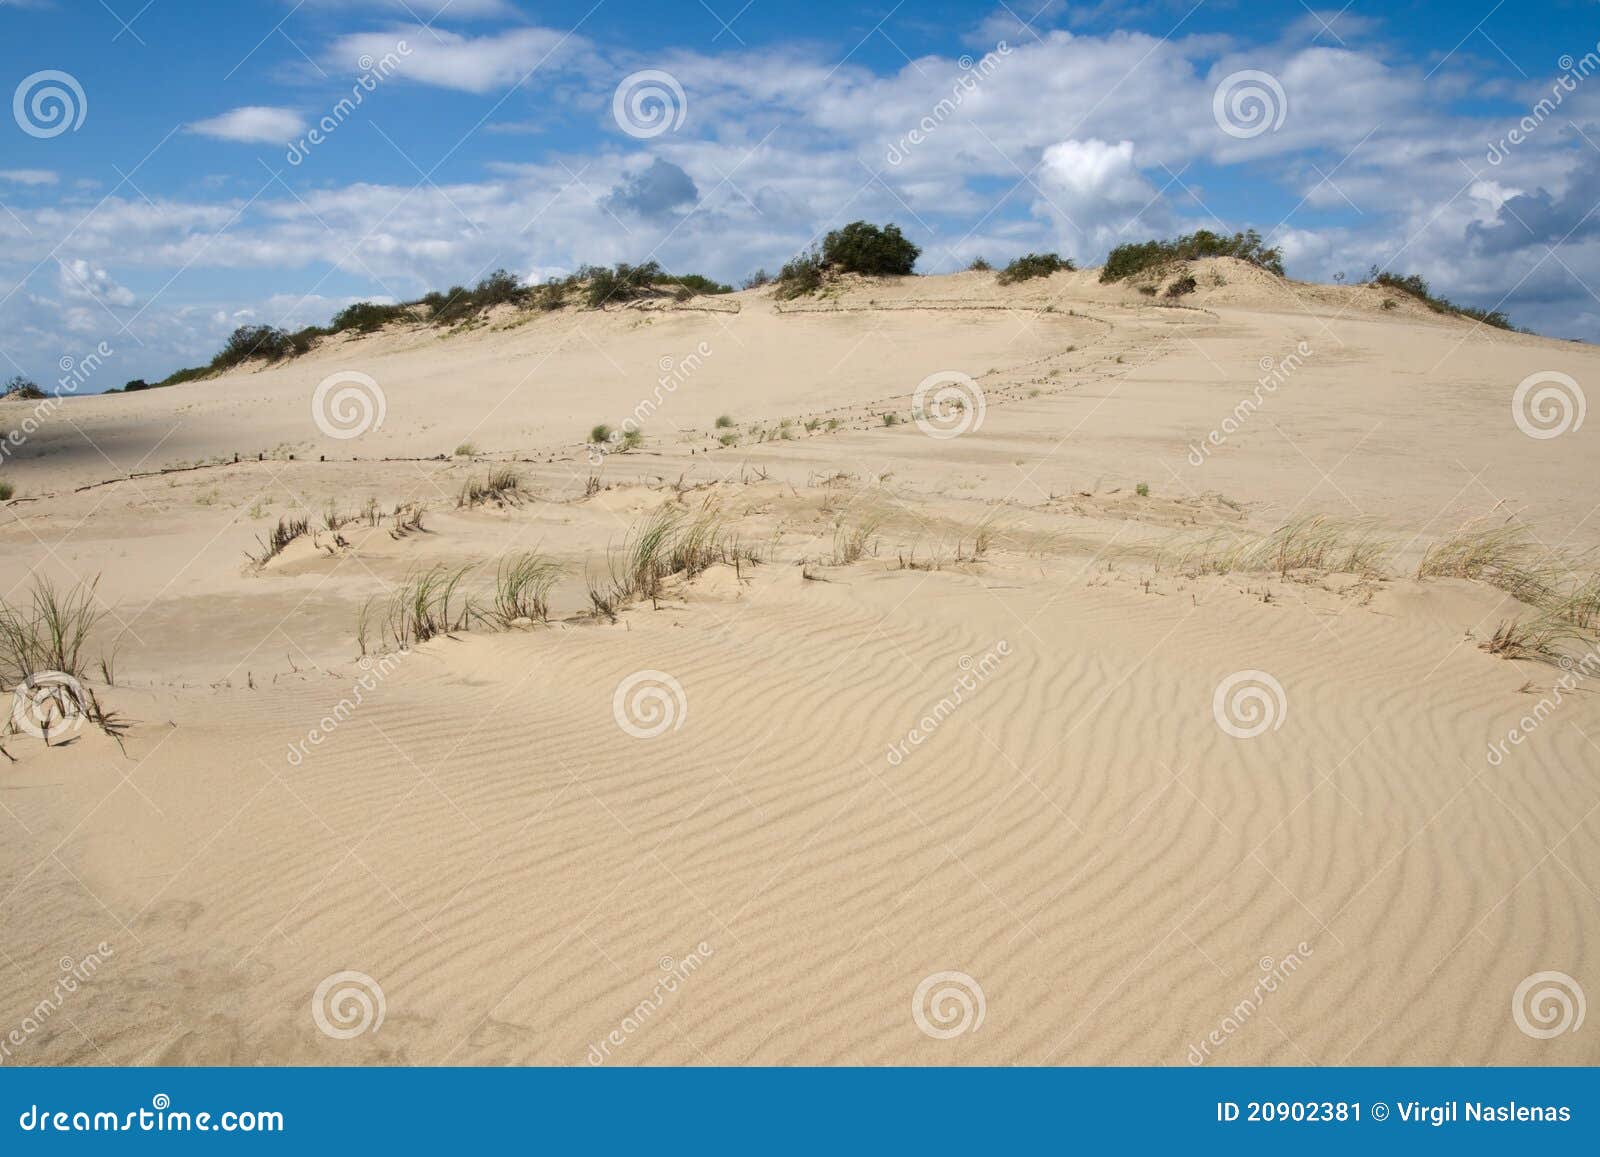 curonian spit sand dunes